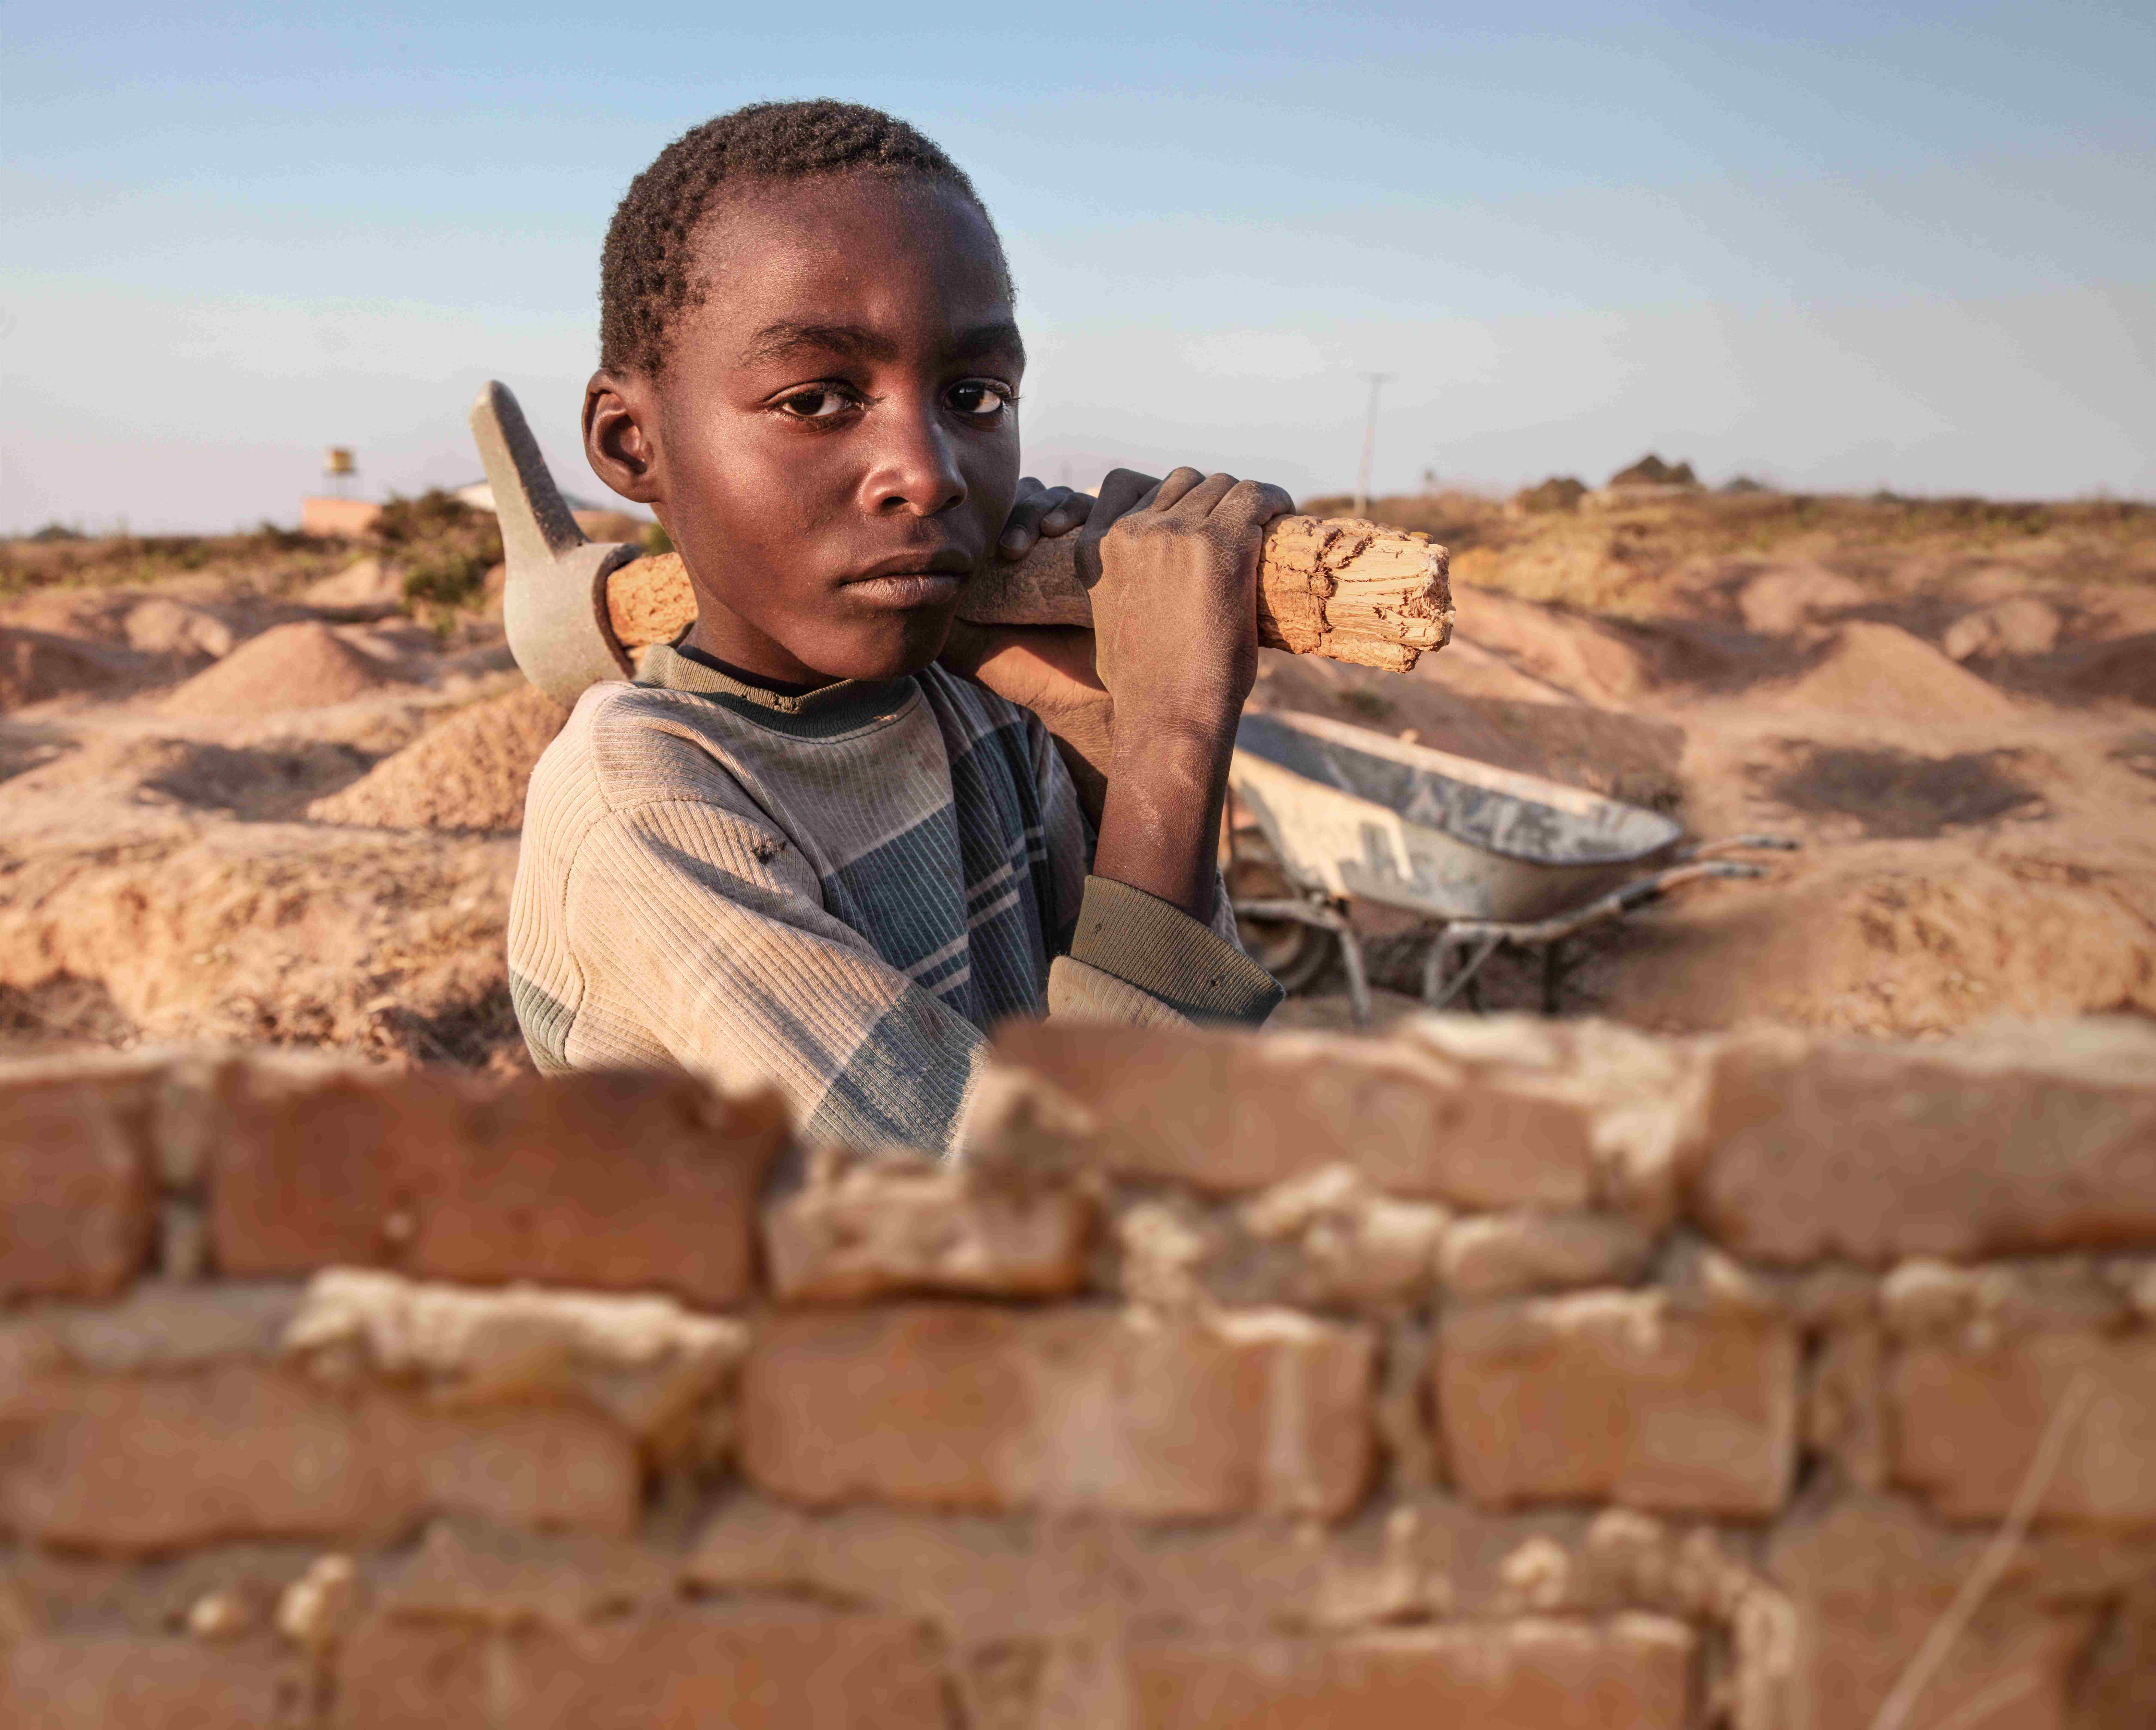 Ein Junge aus Sambia steht an einer Mauer, auf der Schulter trägt er eine schwere Spitzhacke. (Quelle: Christian Herrmanny)